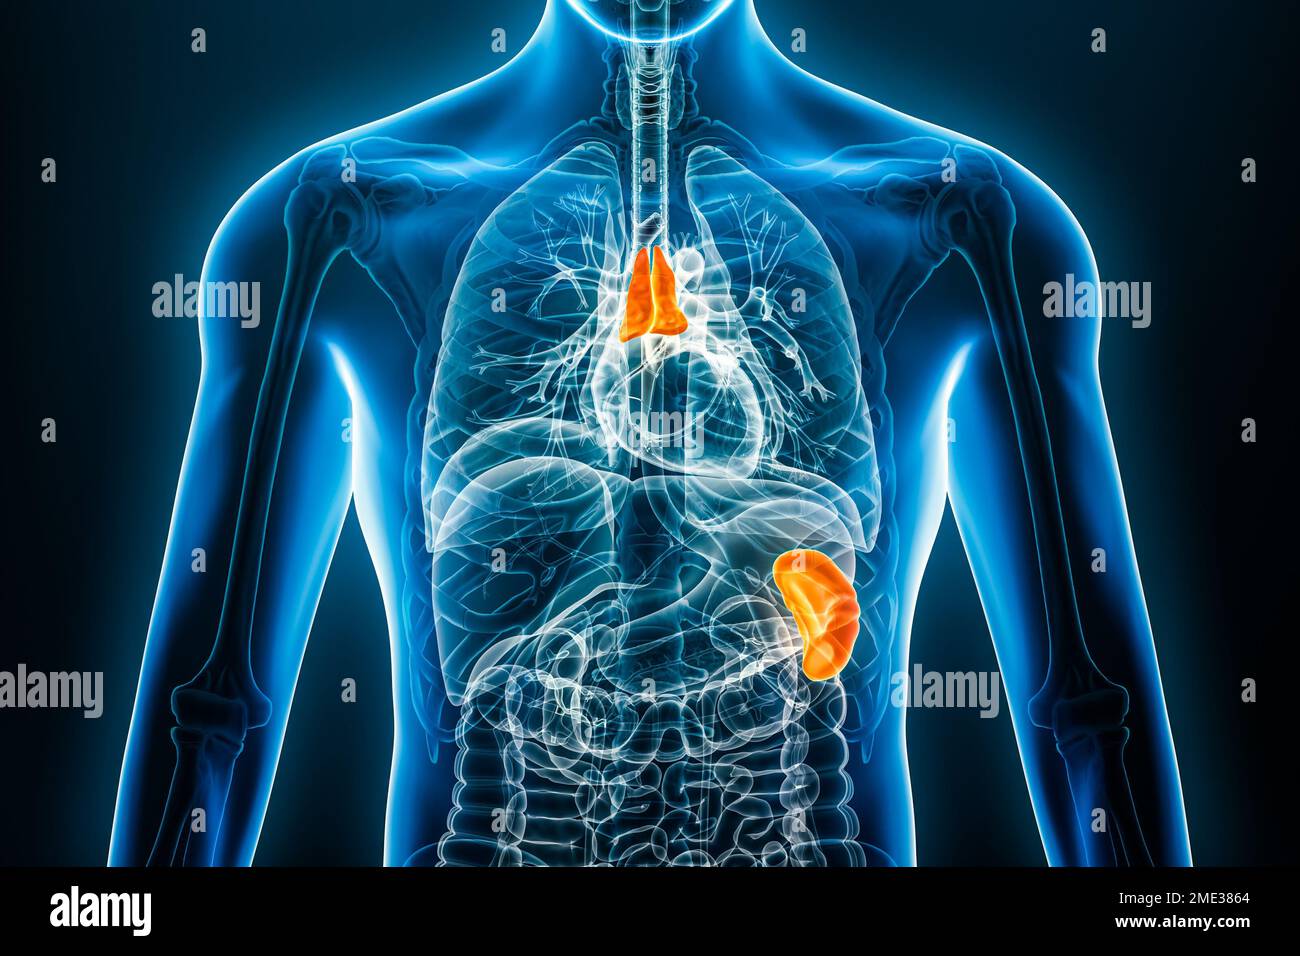 Thymus à rayons X et organe interne de la rate 3D, illustration du rendu avec contours du corps mâle. Anatomie humaine, système lymphoïde, médical, biologie, science, il Banque D'Images